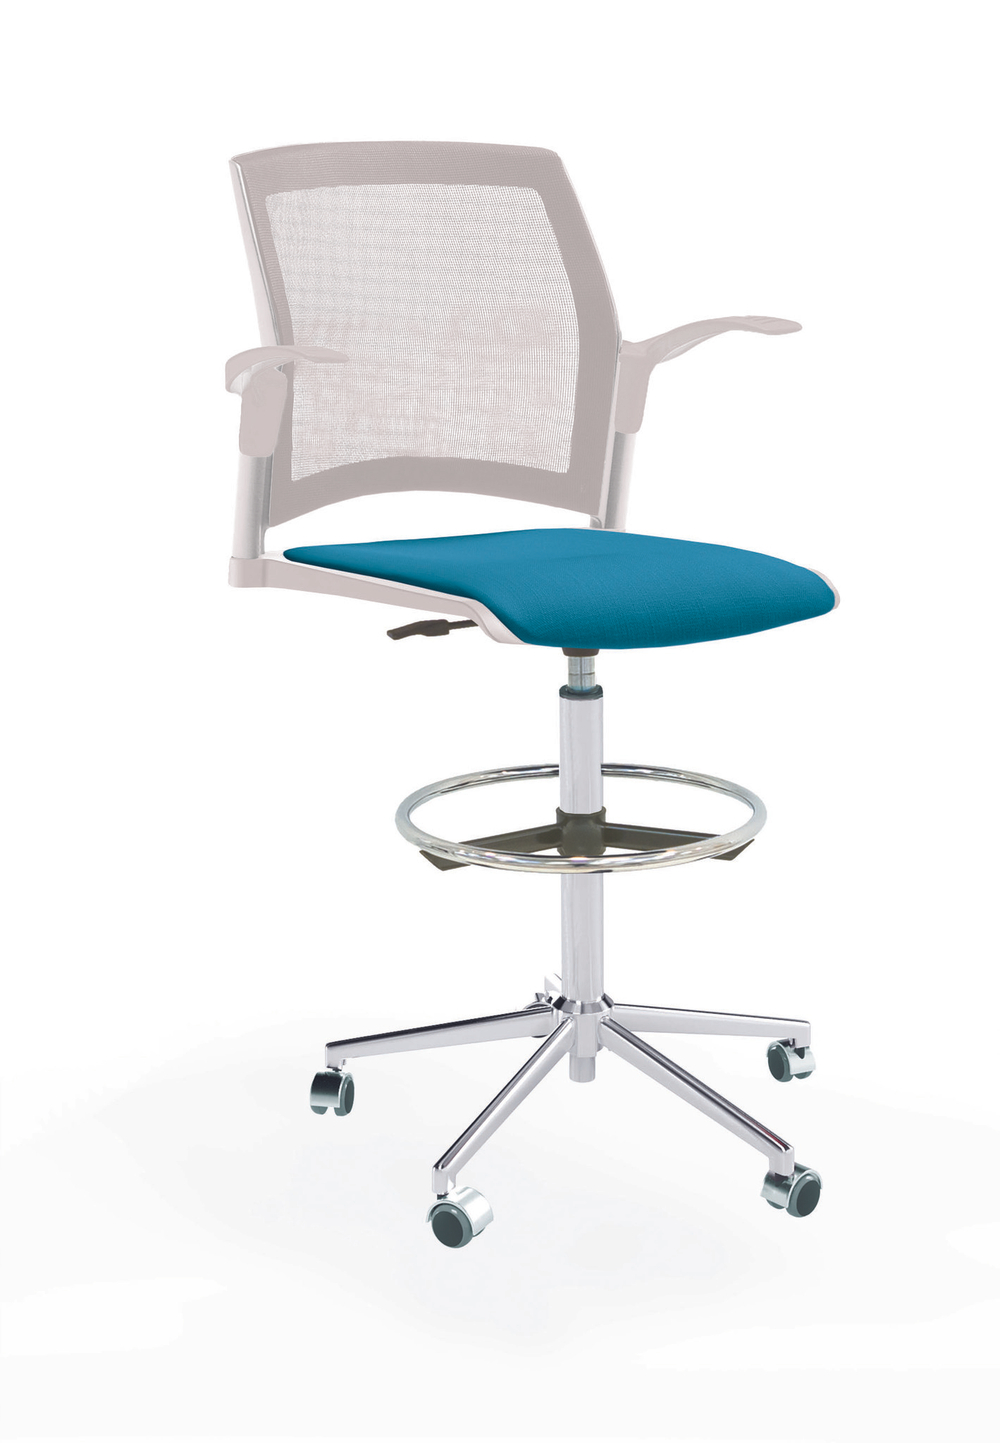 Кресло Rewind каркас хром, пластик белый, база стальная хромированная, с открытыми подлокотниками, сиденье лазурное, спинка-сетка